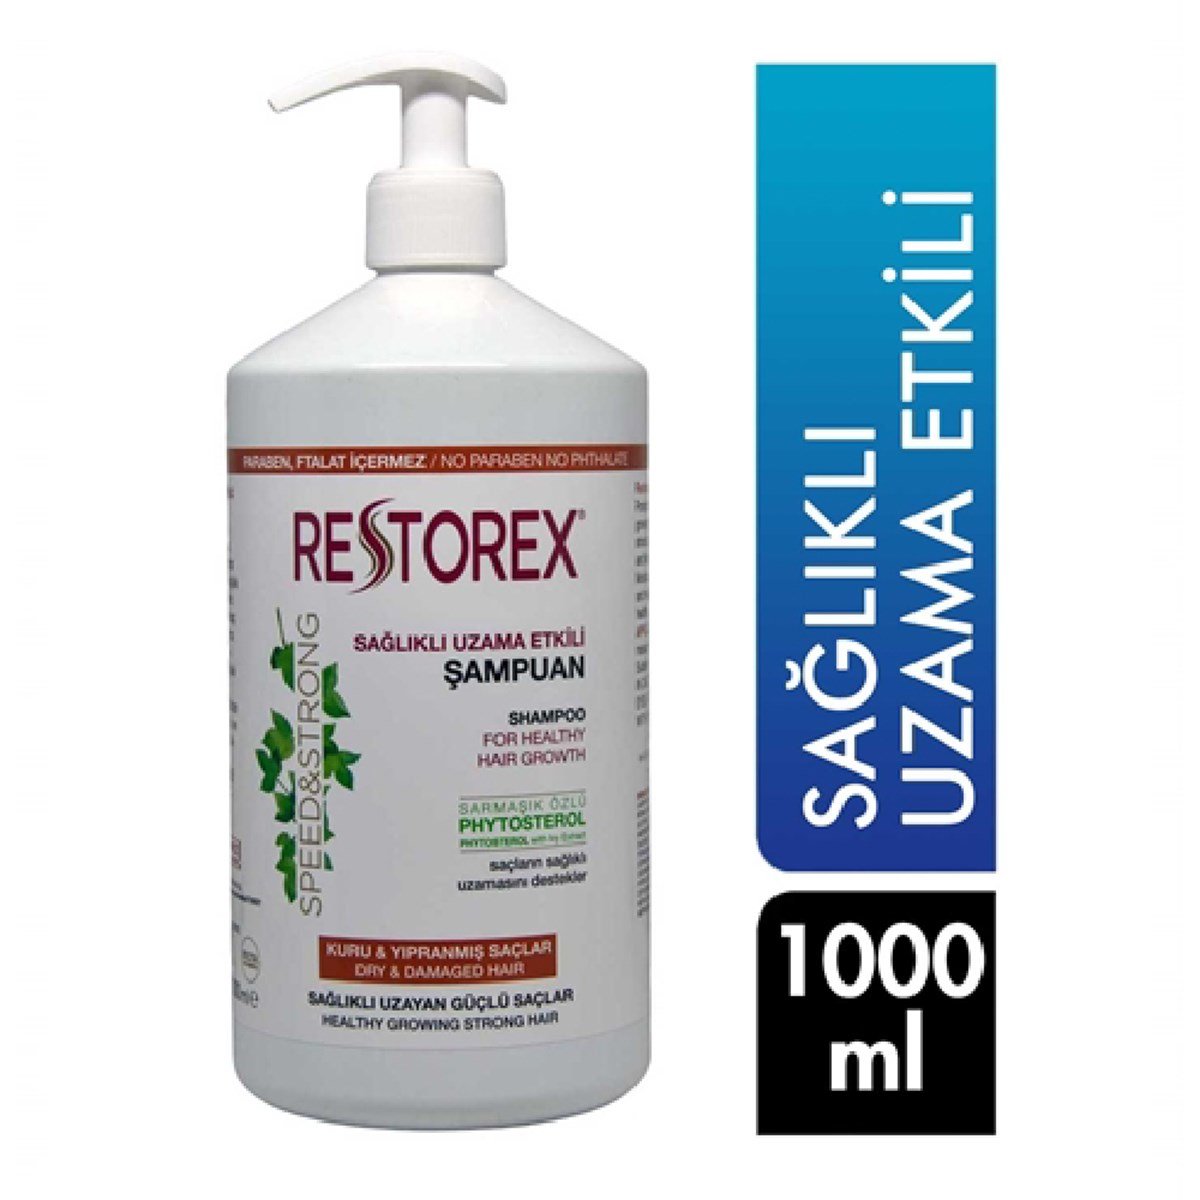 Restorex Şampuan Onarıcı Kuru ve Yıpranmış Saçlar İçin 1000 ml - Platin